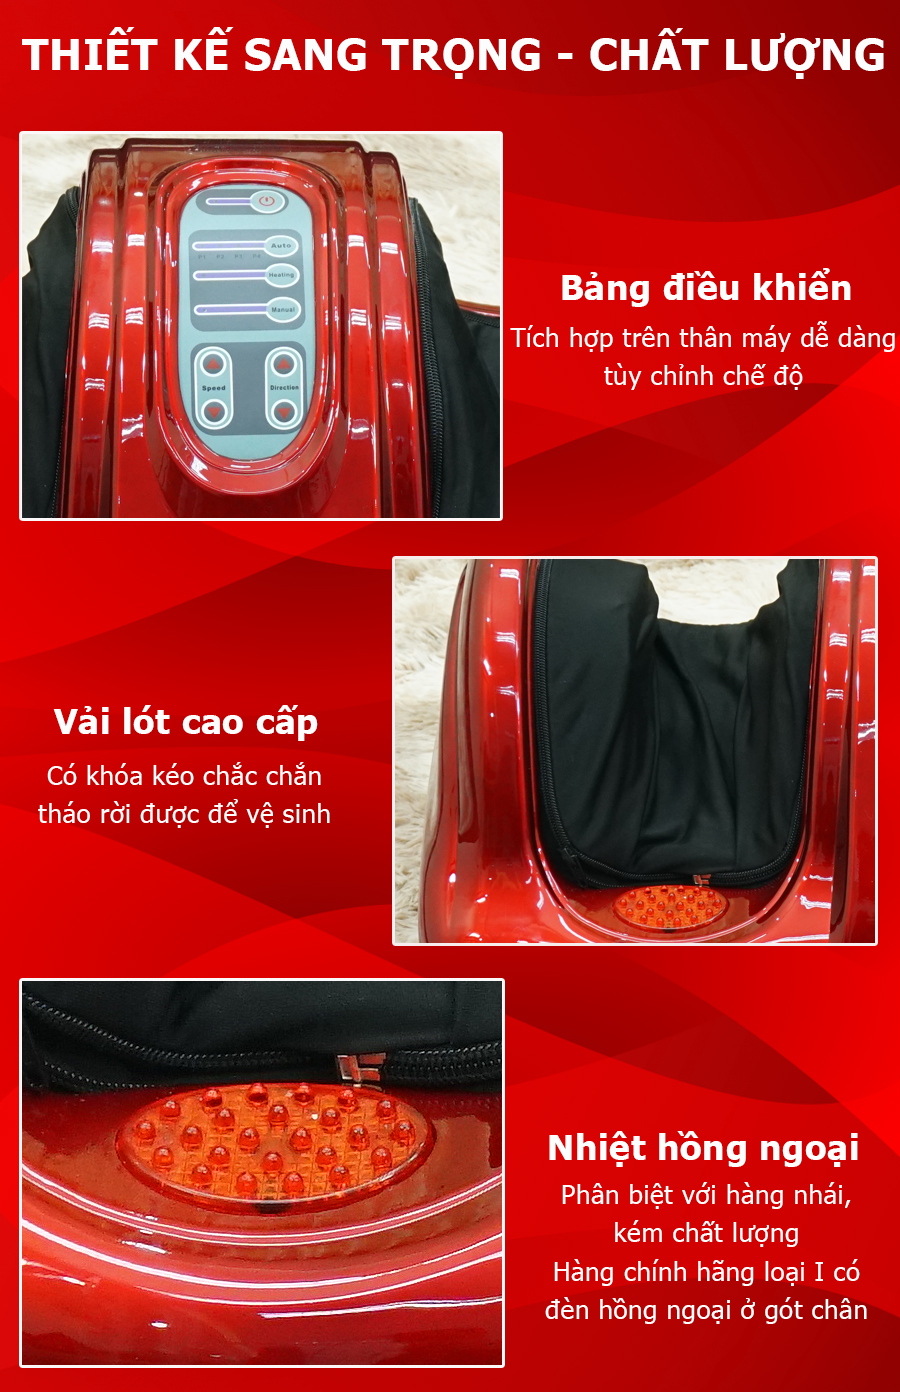 Máy massage chân hồng ngoại Fuki Nhật Bản FK-6811 (màu đỏ)